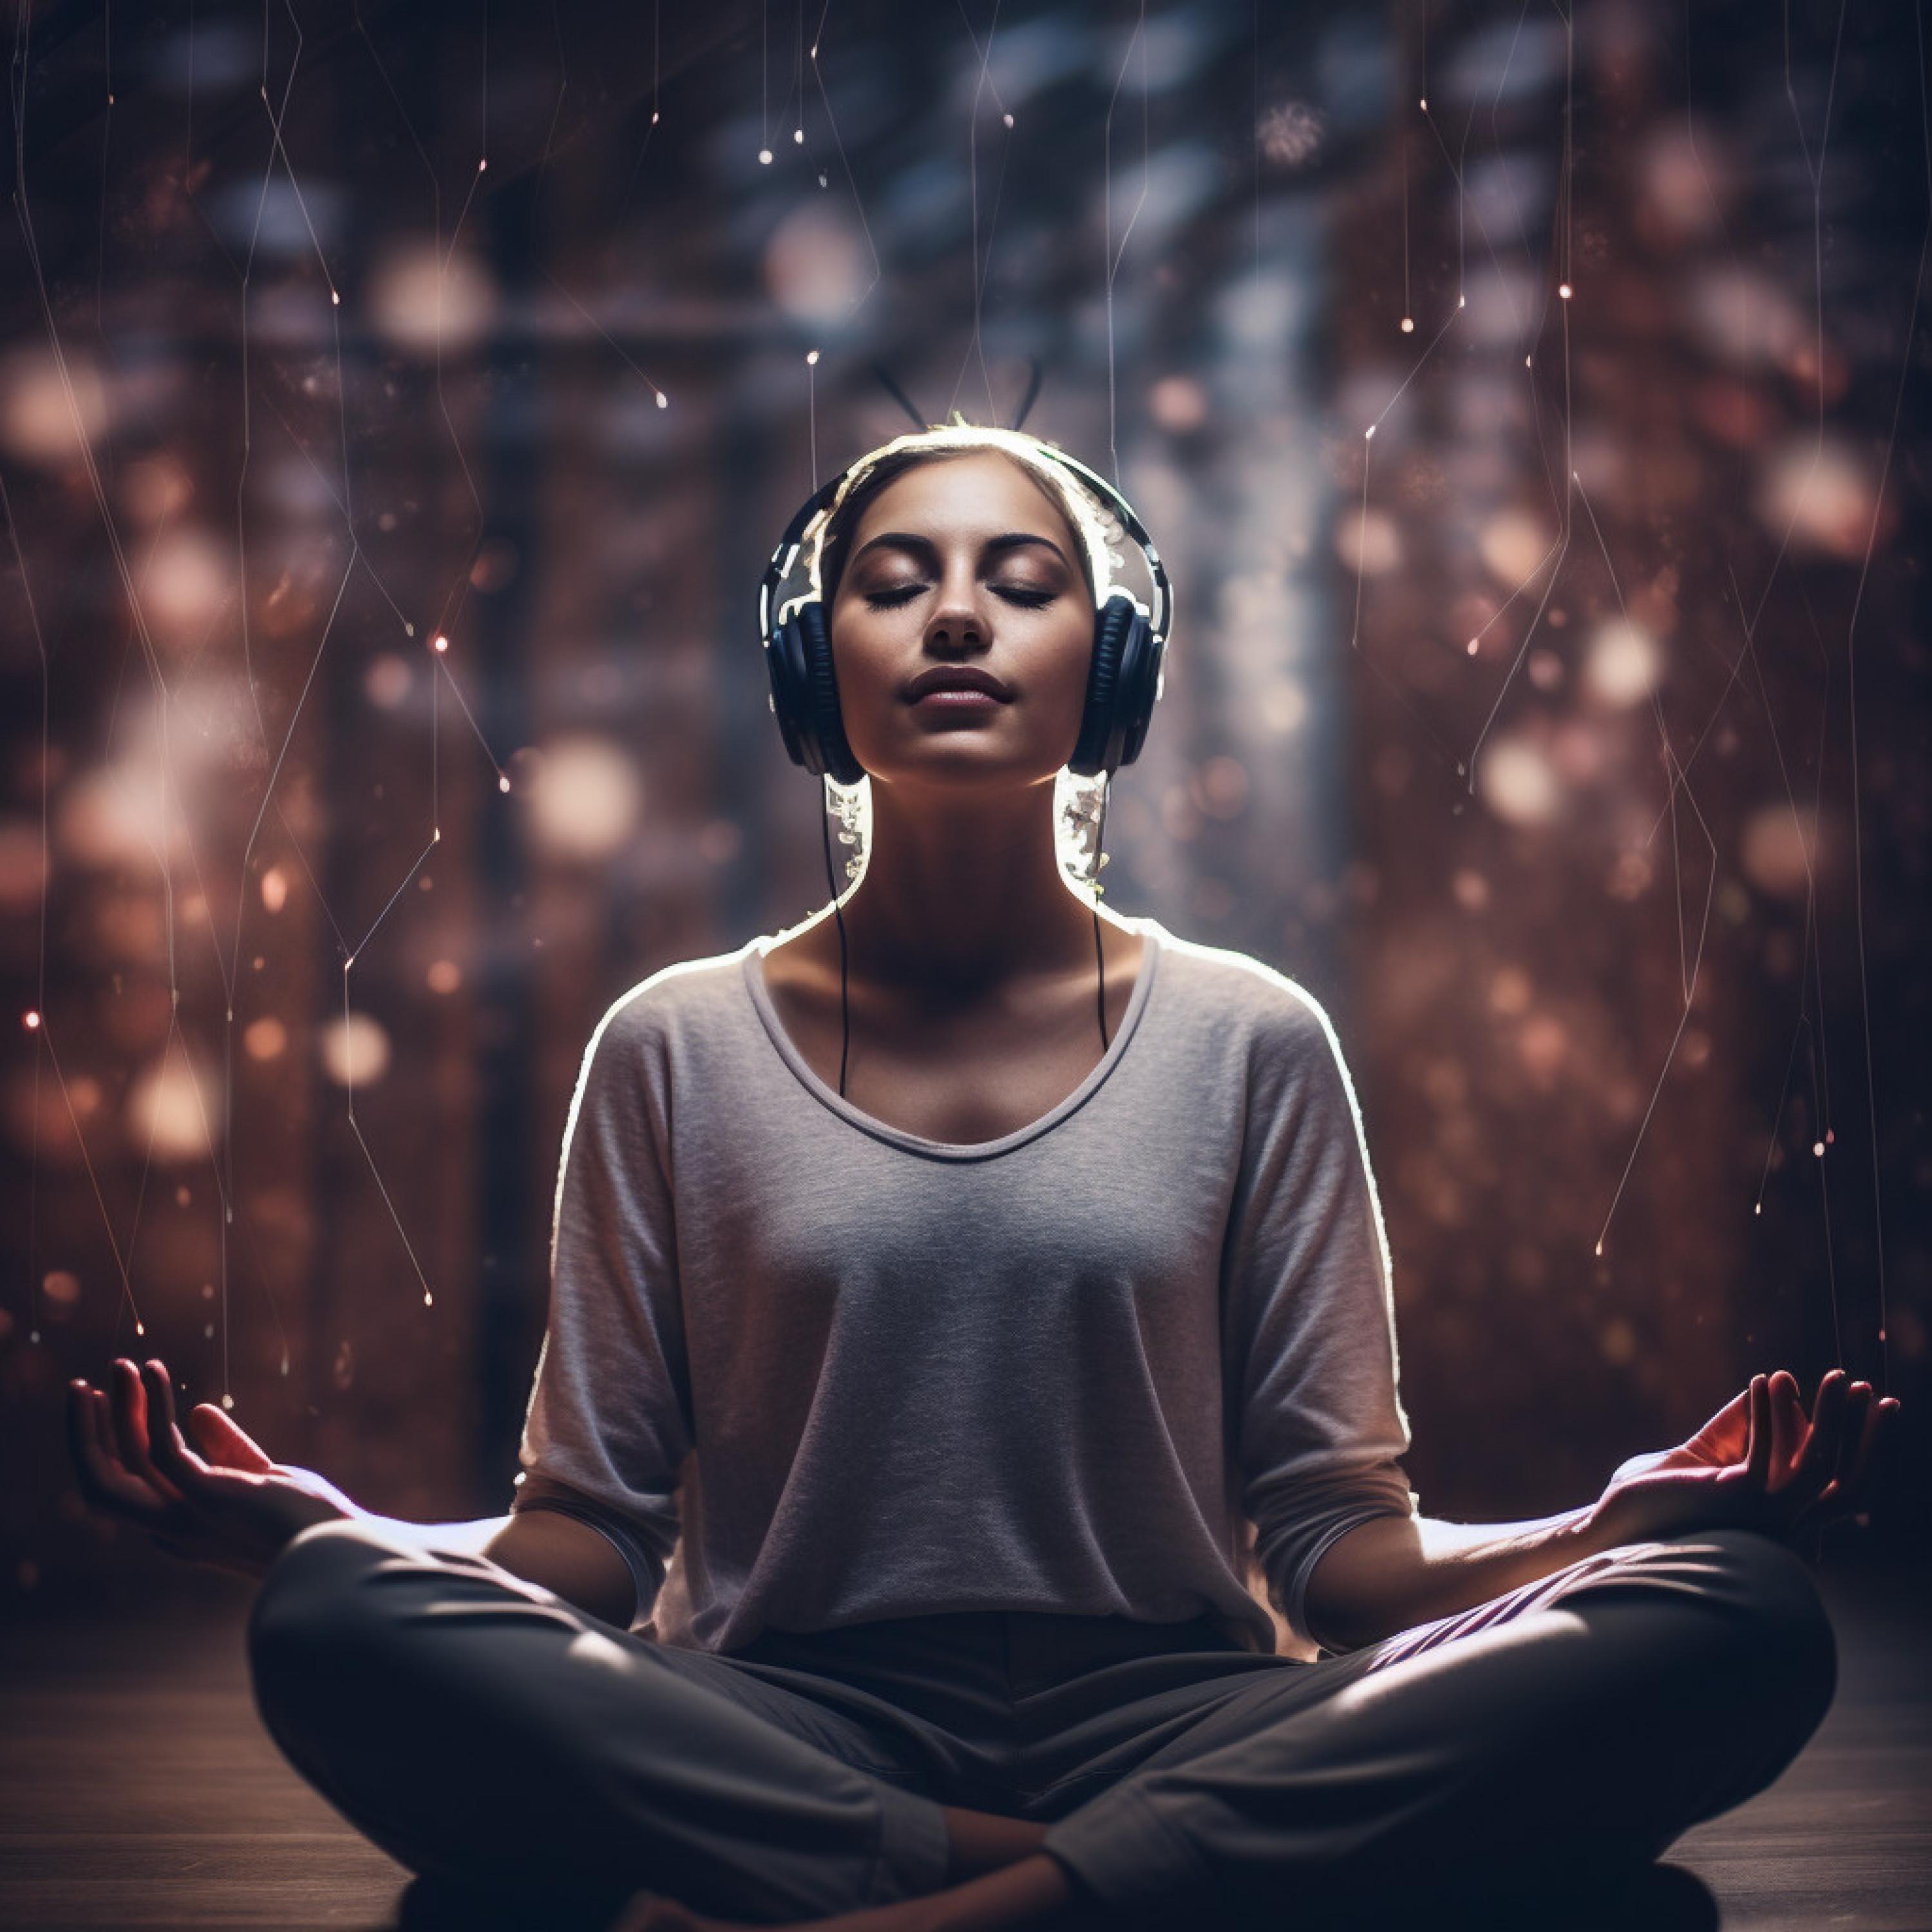 Yoga Radiance - Rhythmic Binaural Echo